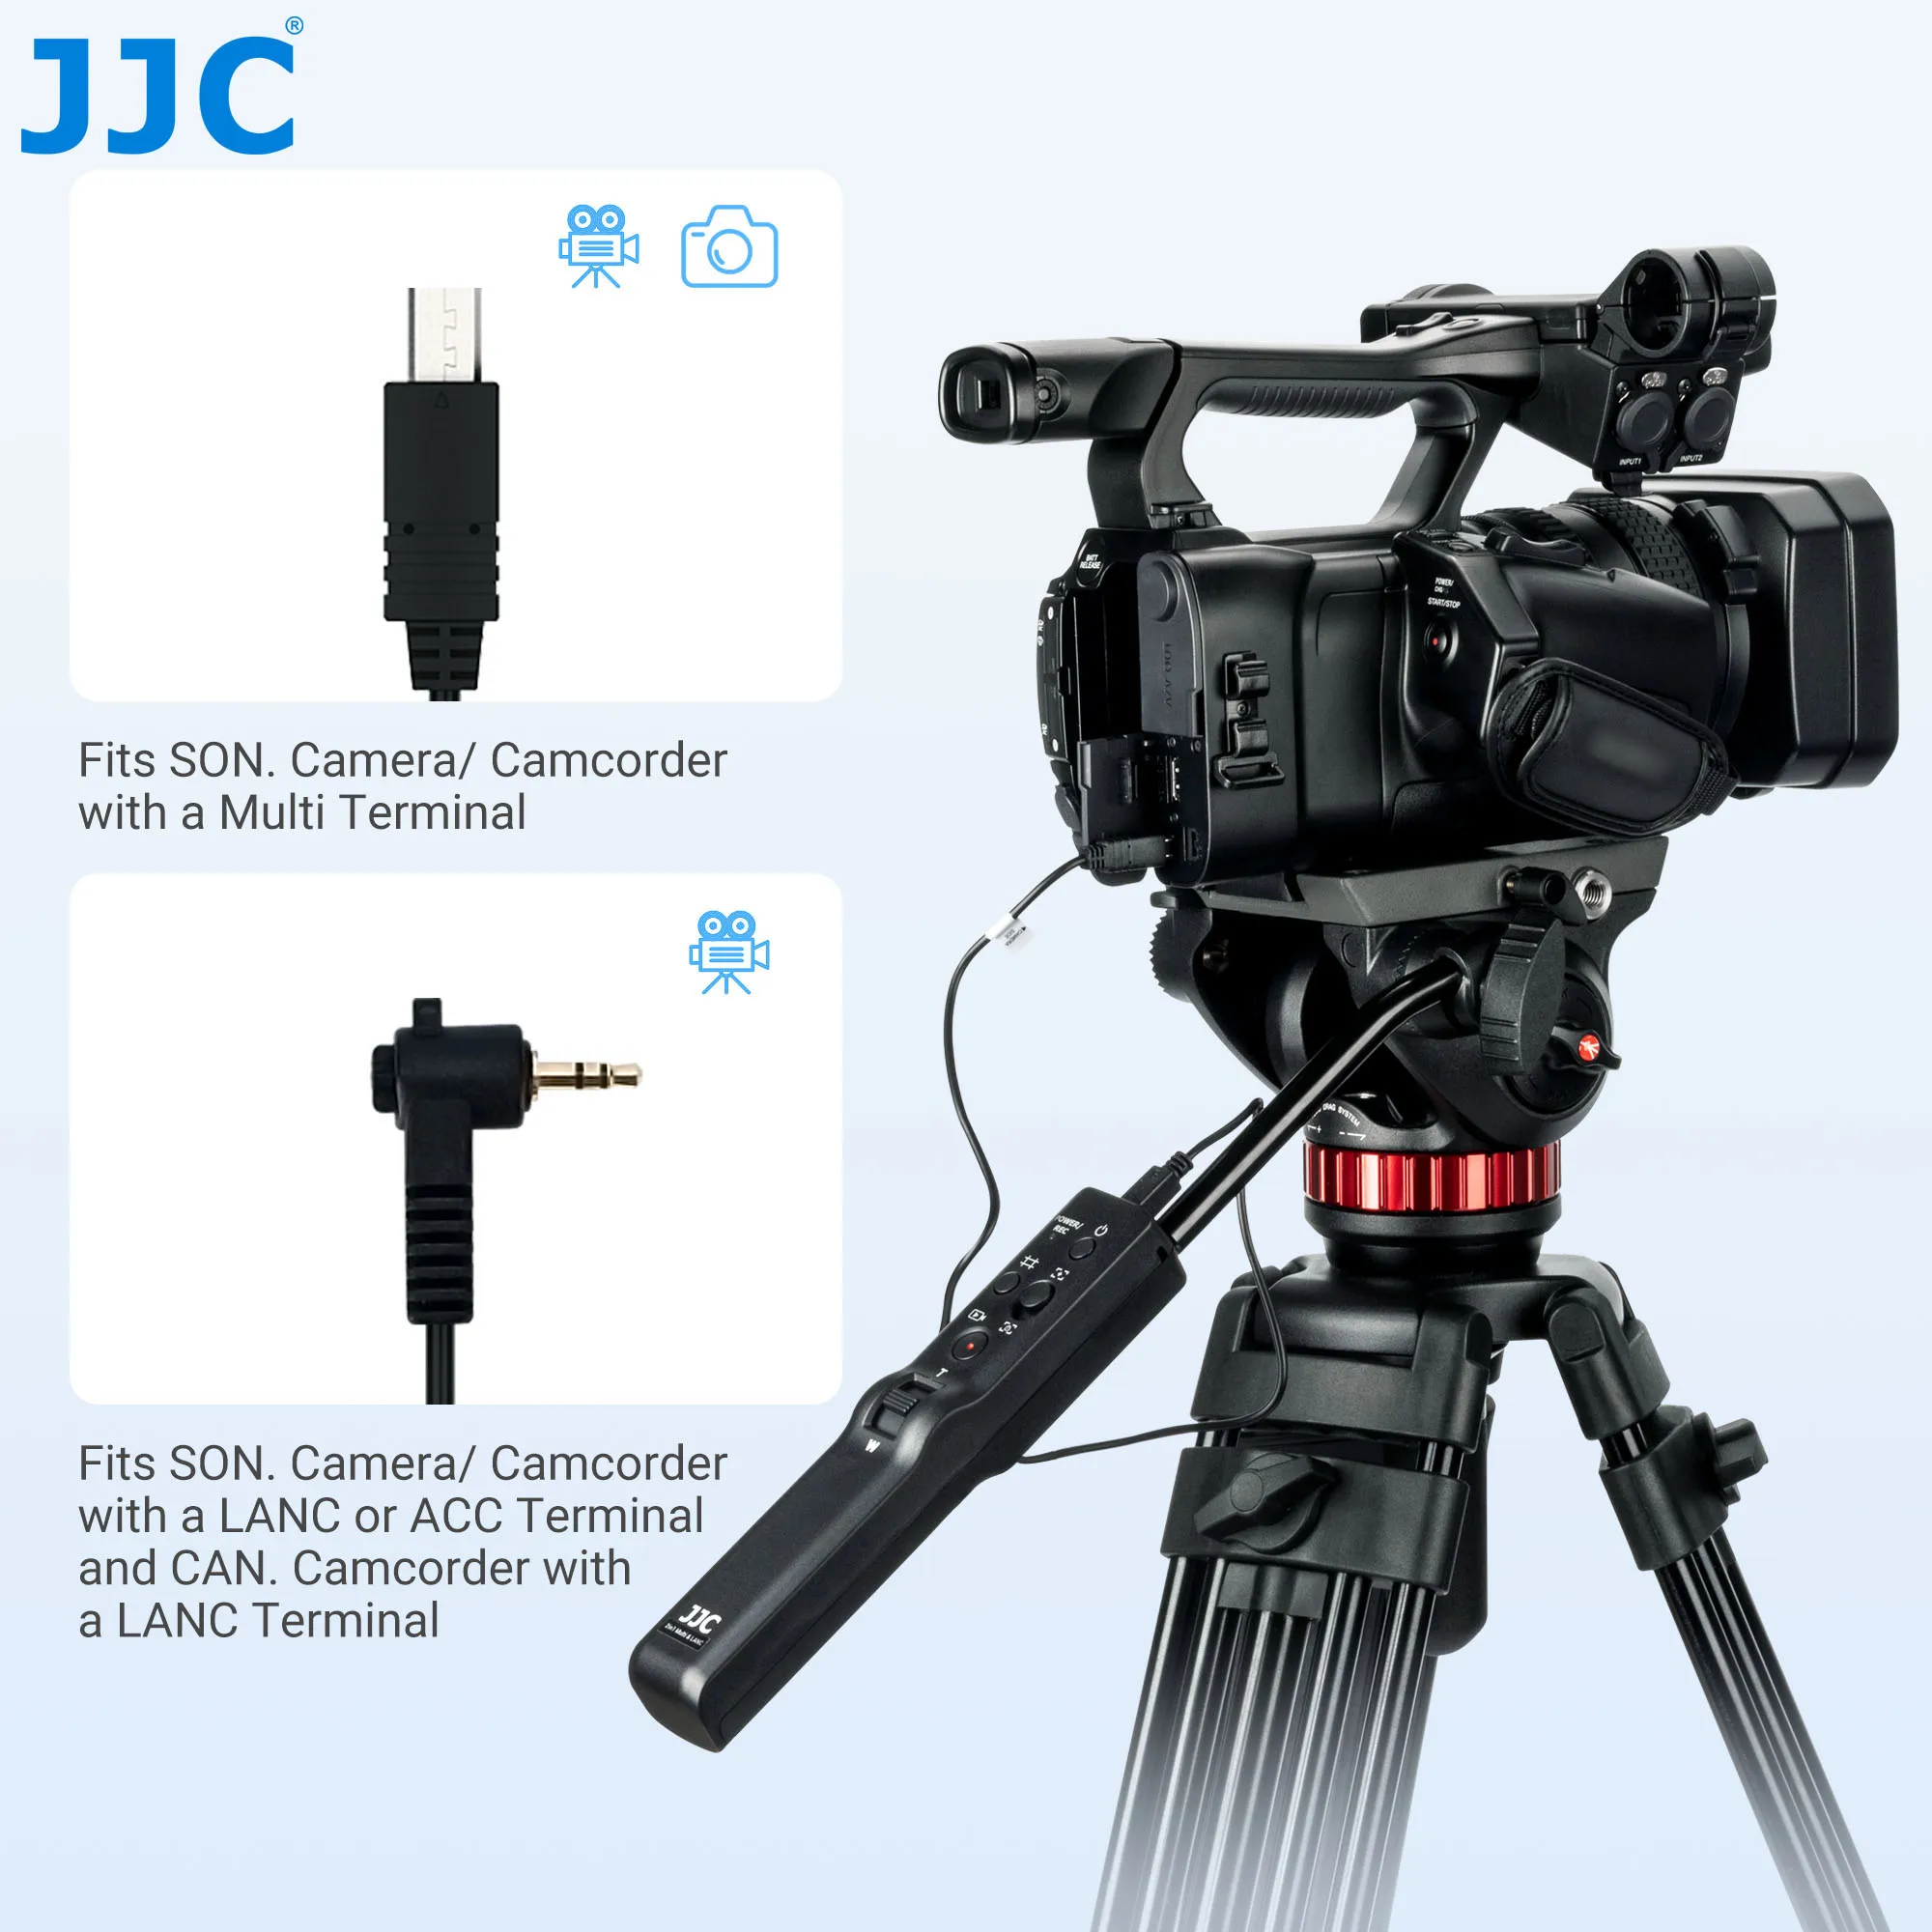 JJC פן בר שליטה מרחוק על LANC/מוטי מסוף מצלמות/מצלמת וידאו, עובד עם Manfrotto 502AH 502A 504HD 509HD 526 Nitrote N8 - 1